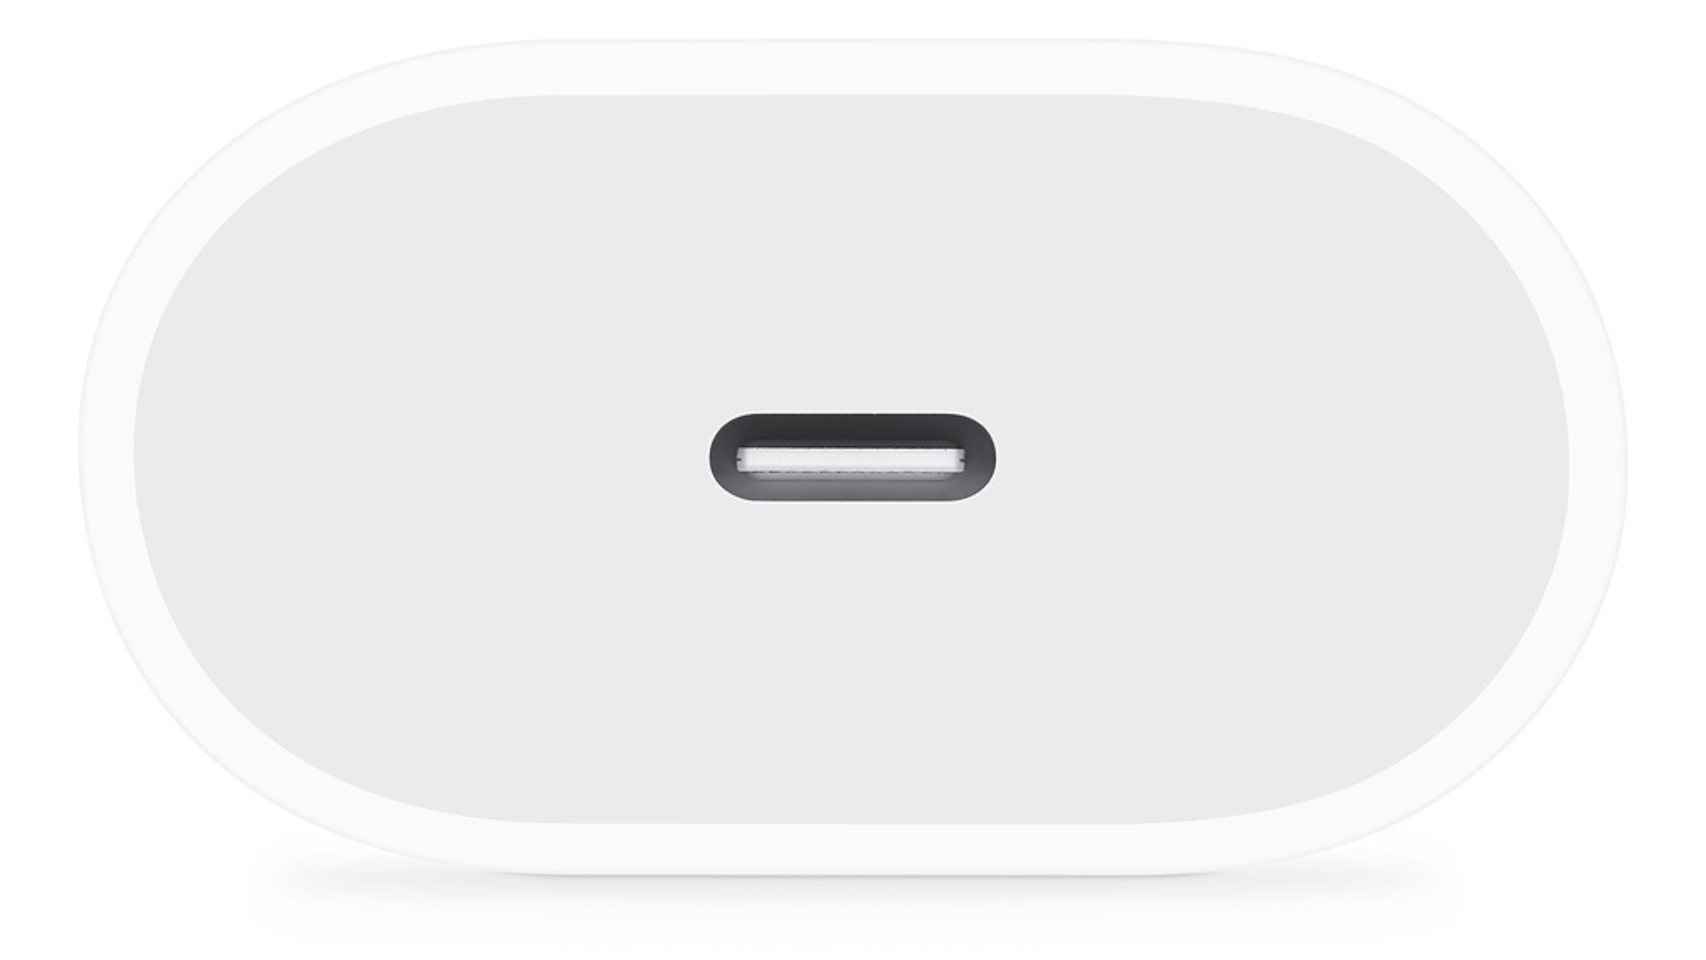 El nuevo cargador de Apple viene con conexión USB-C como la del cable del iPhone